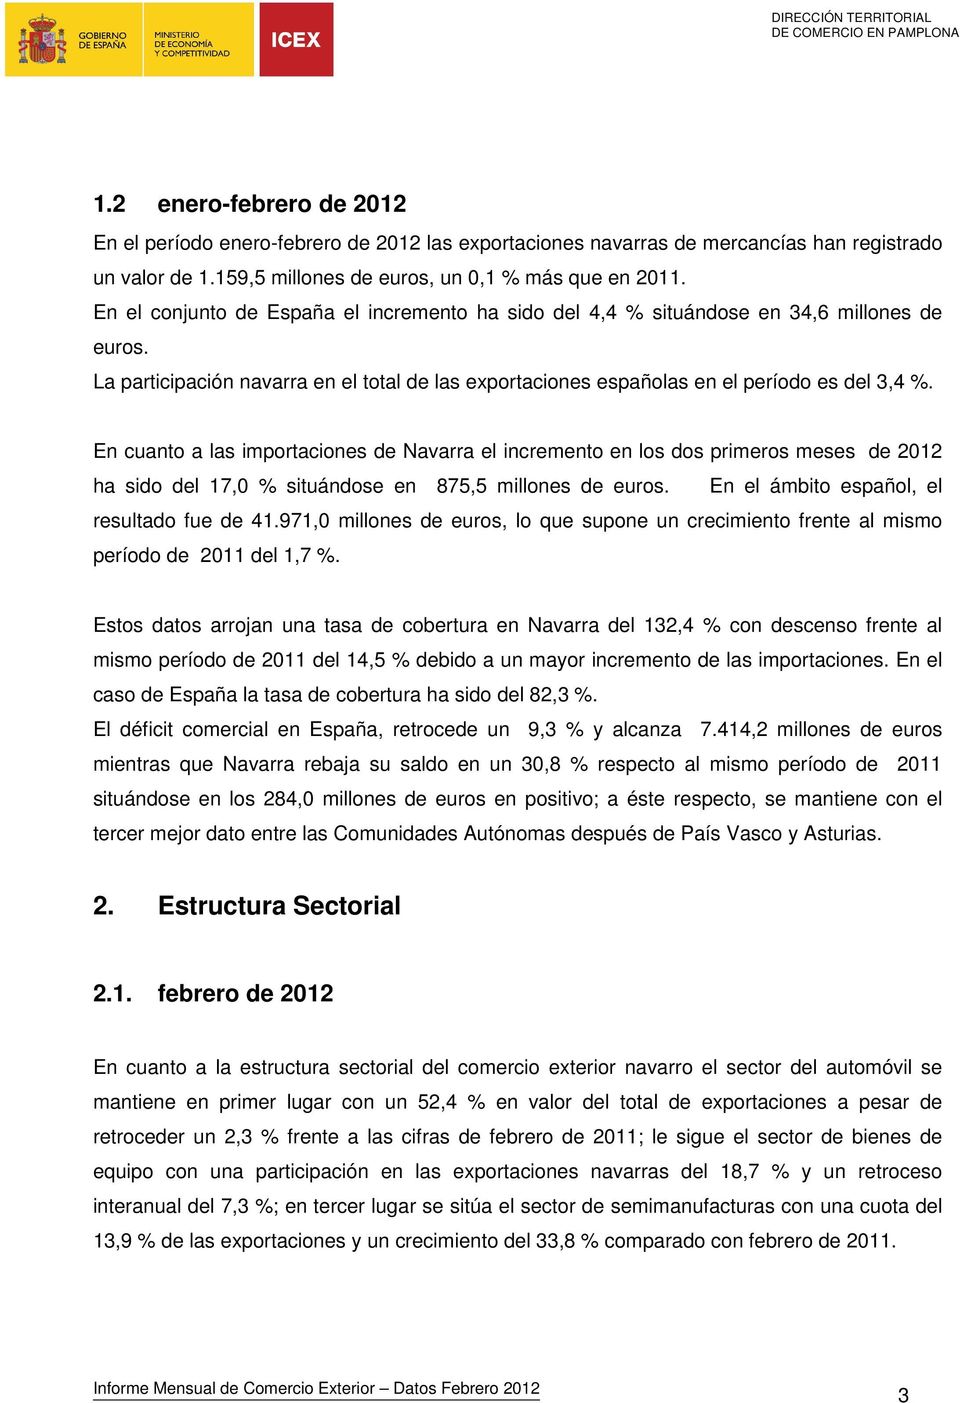 En cuanto a las importaciones de Navarra el incremento en los dos primeros meses de 2012 ha sido del 17,0 % situándose en 875,5 millones de euros. En el ámbito español, el resultado fue de 41.